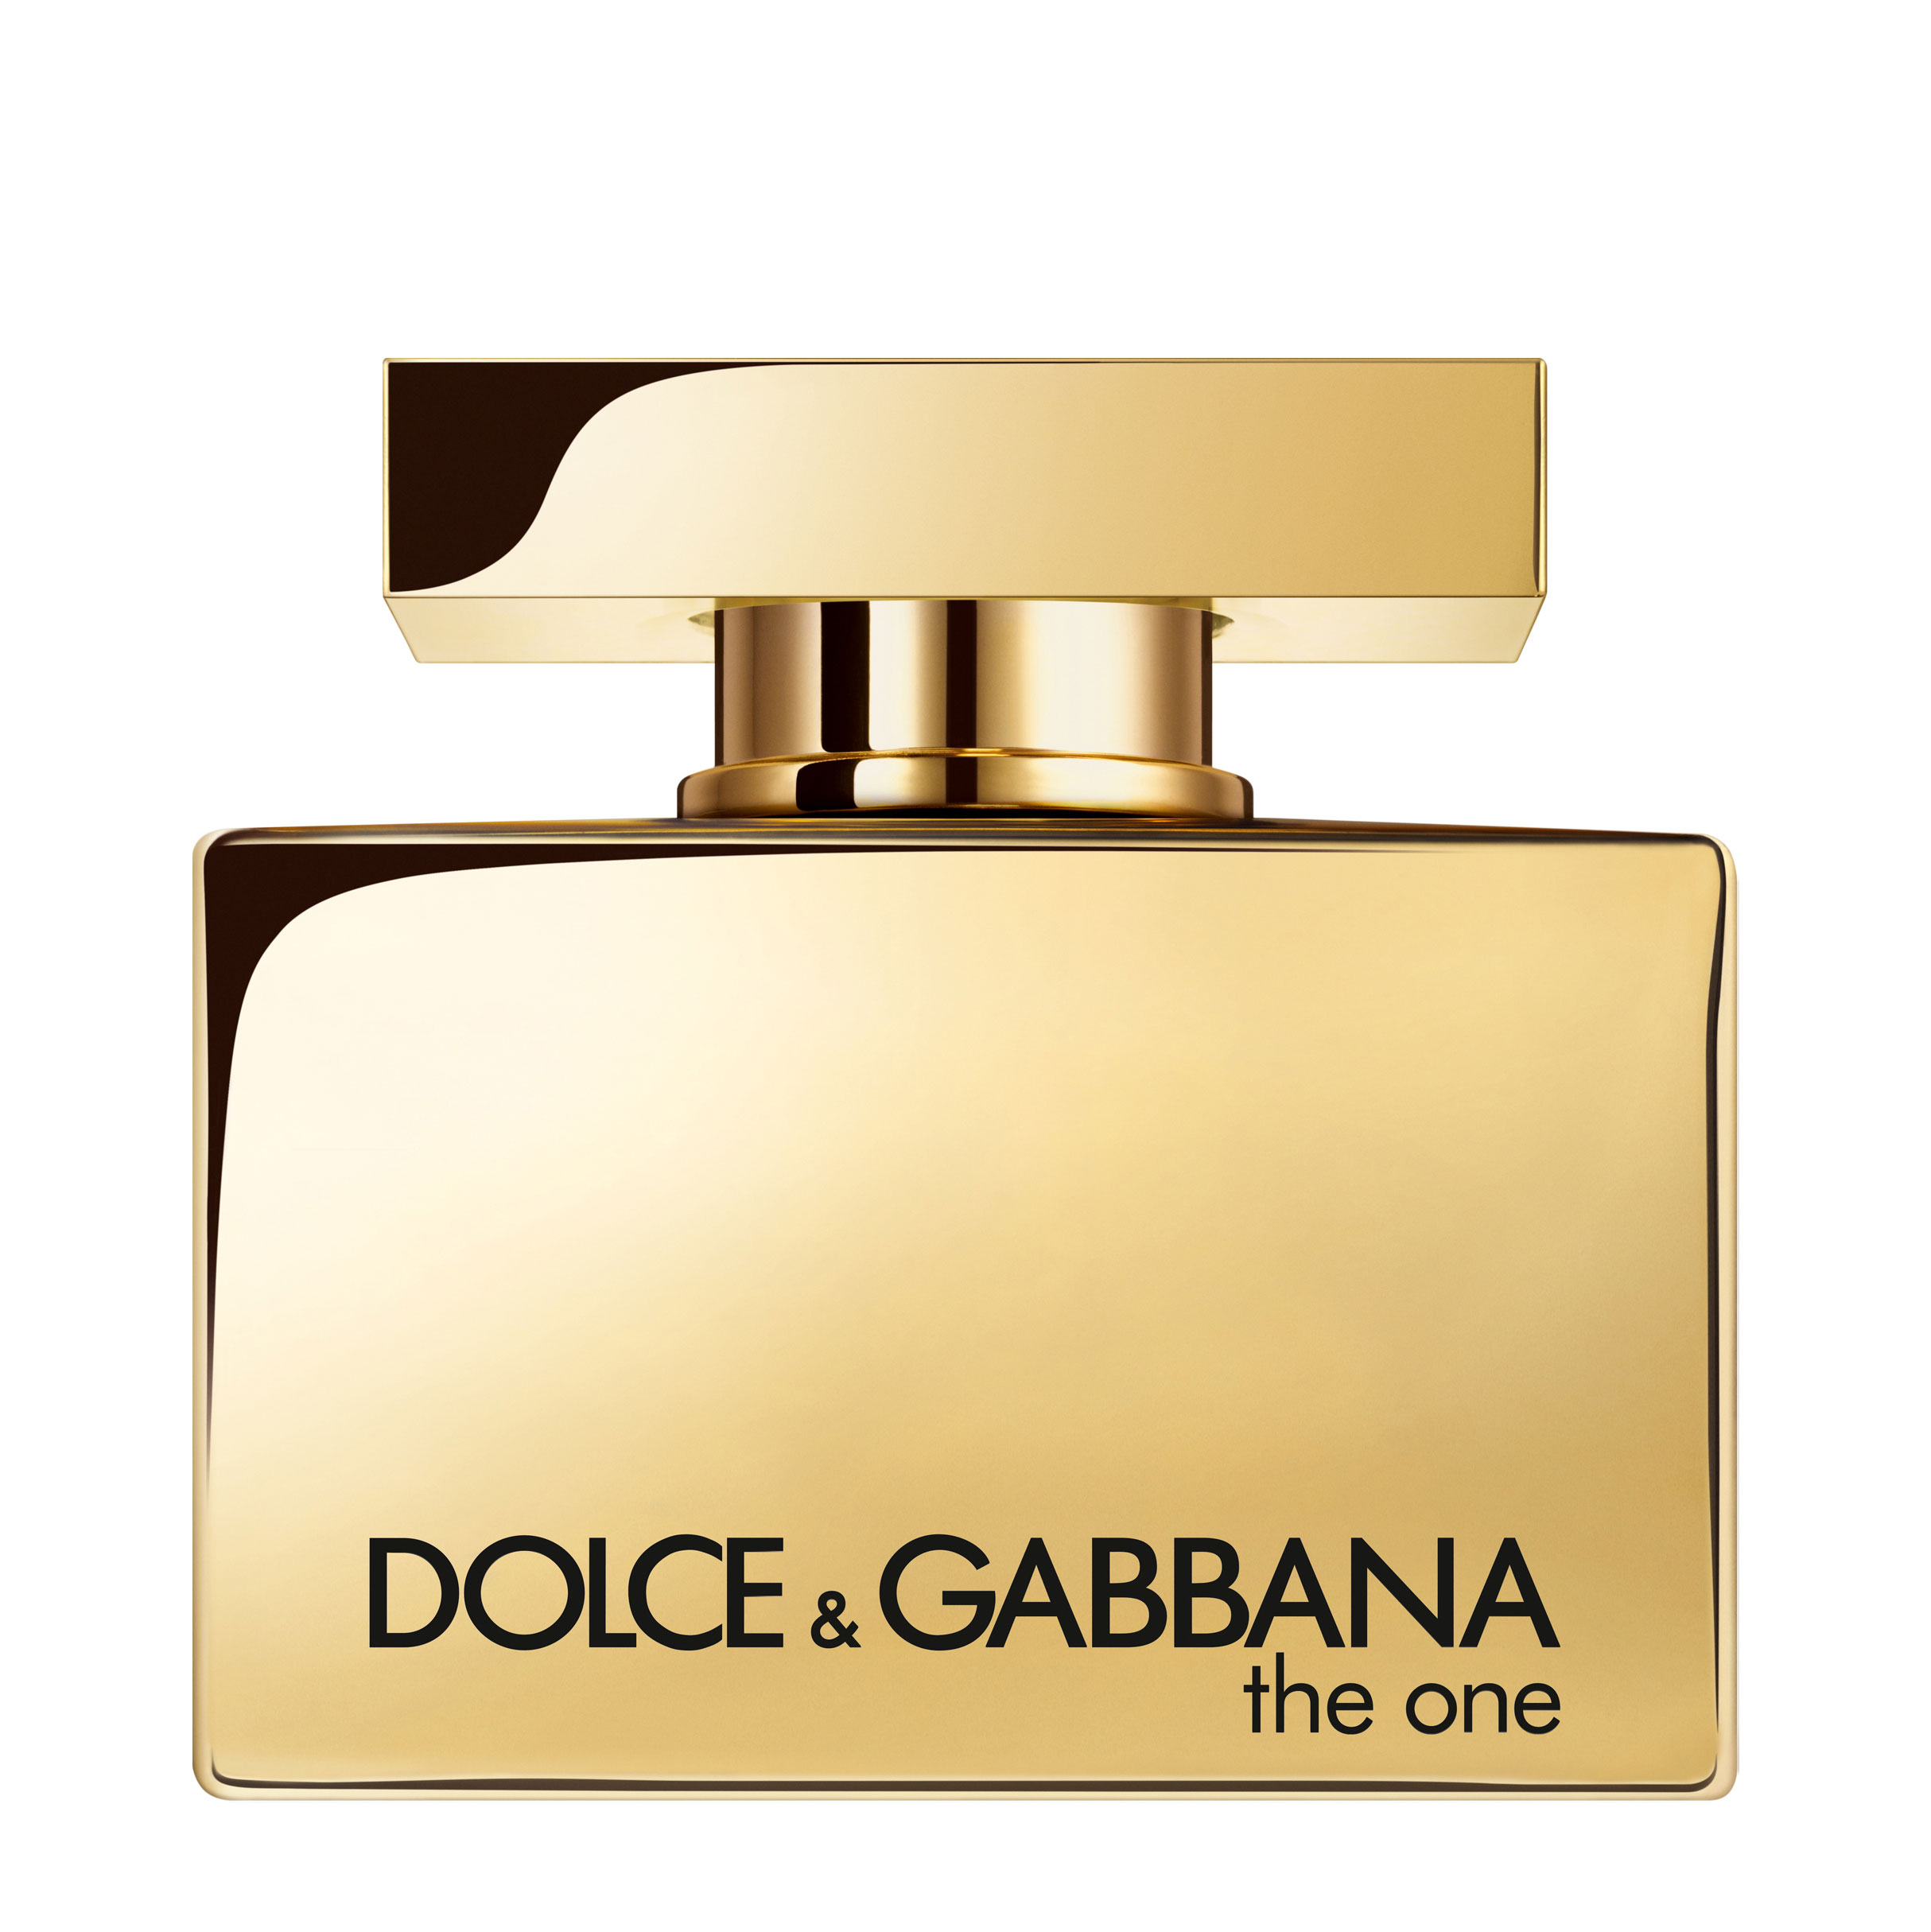 Dolce gabbana the one for woman. Dolce & Gabbana the one women EDP, 75 ml. Dolce Gabbana the one Gold intense 30 ml. Dolce Gabbana the one Gold intense. Духи Gold Dolce Gabbana the one.